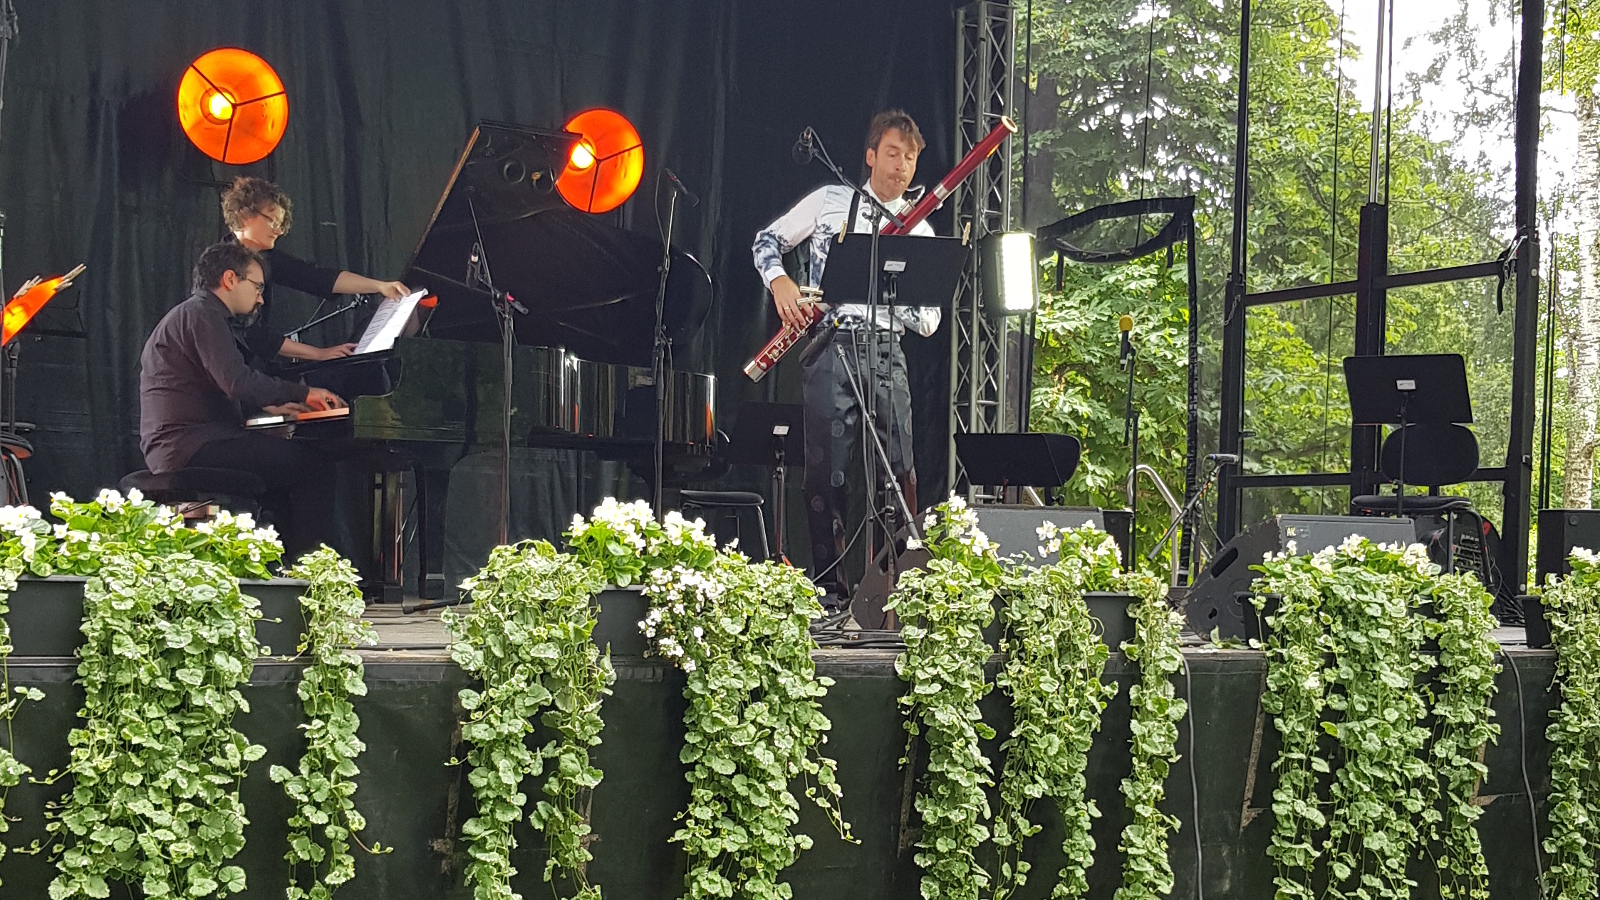 Kuvassa ovat Bence Bogányi soittamassa fagottia ja vasemmalla Tuomas Turriago soittamassa flyygeliä. He ovat puistonäyttämöllä.